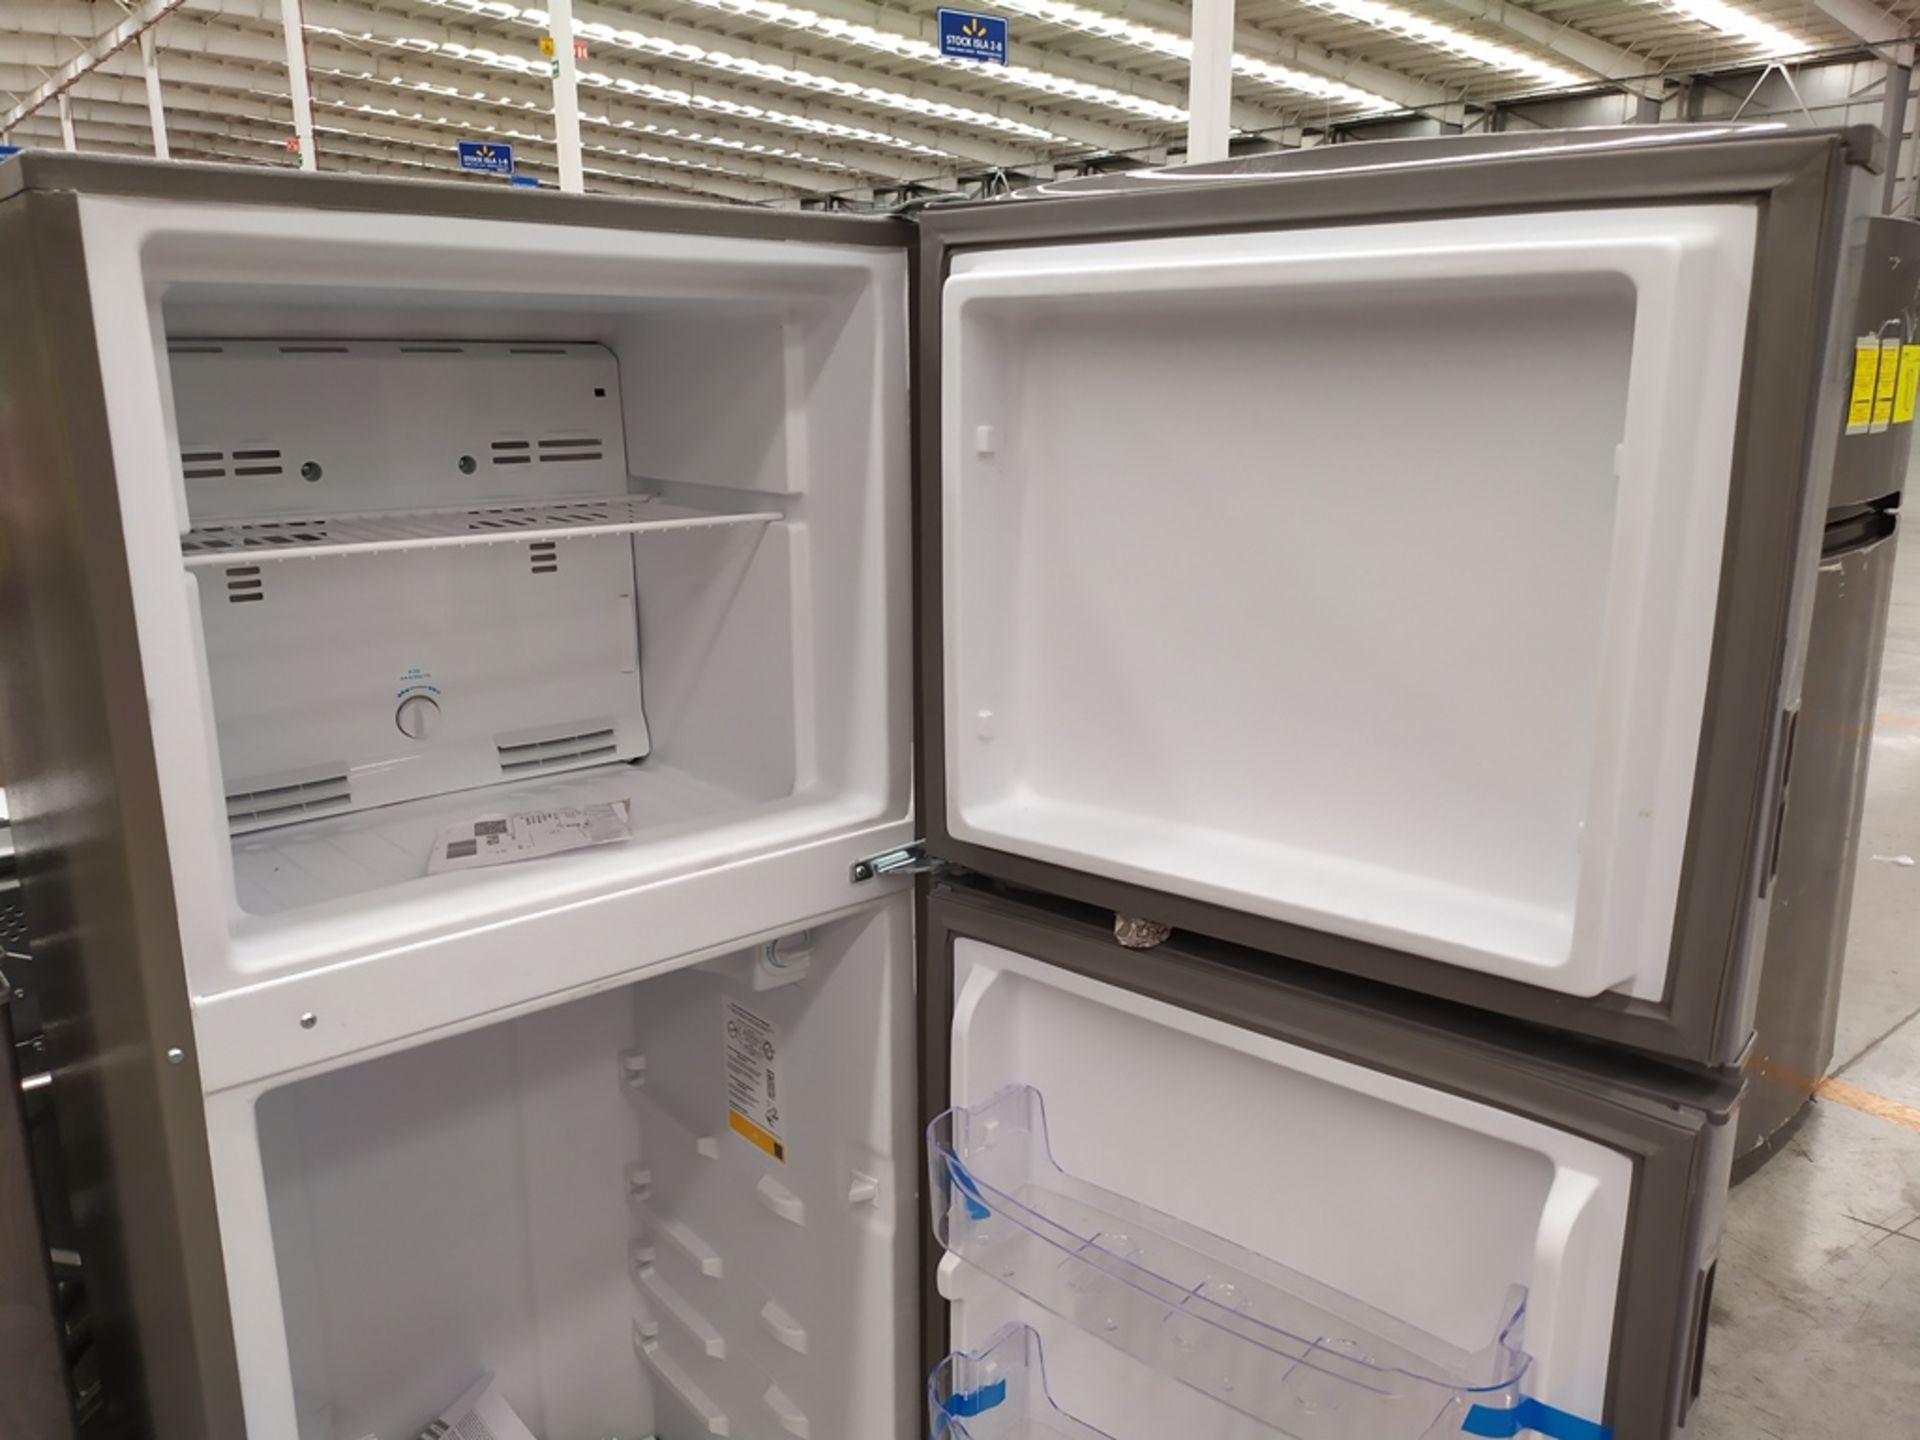 Refrigerador marca Acros, Modelo AT9007G, Serie 1478066, Color Gris, Golpeado, LB-750154559283 - Image 8 of 11